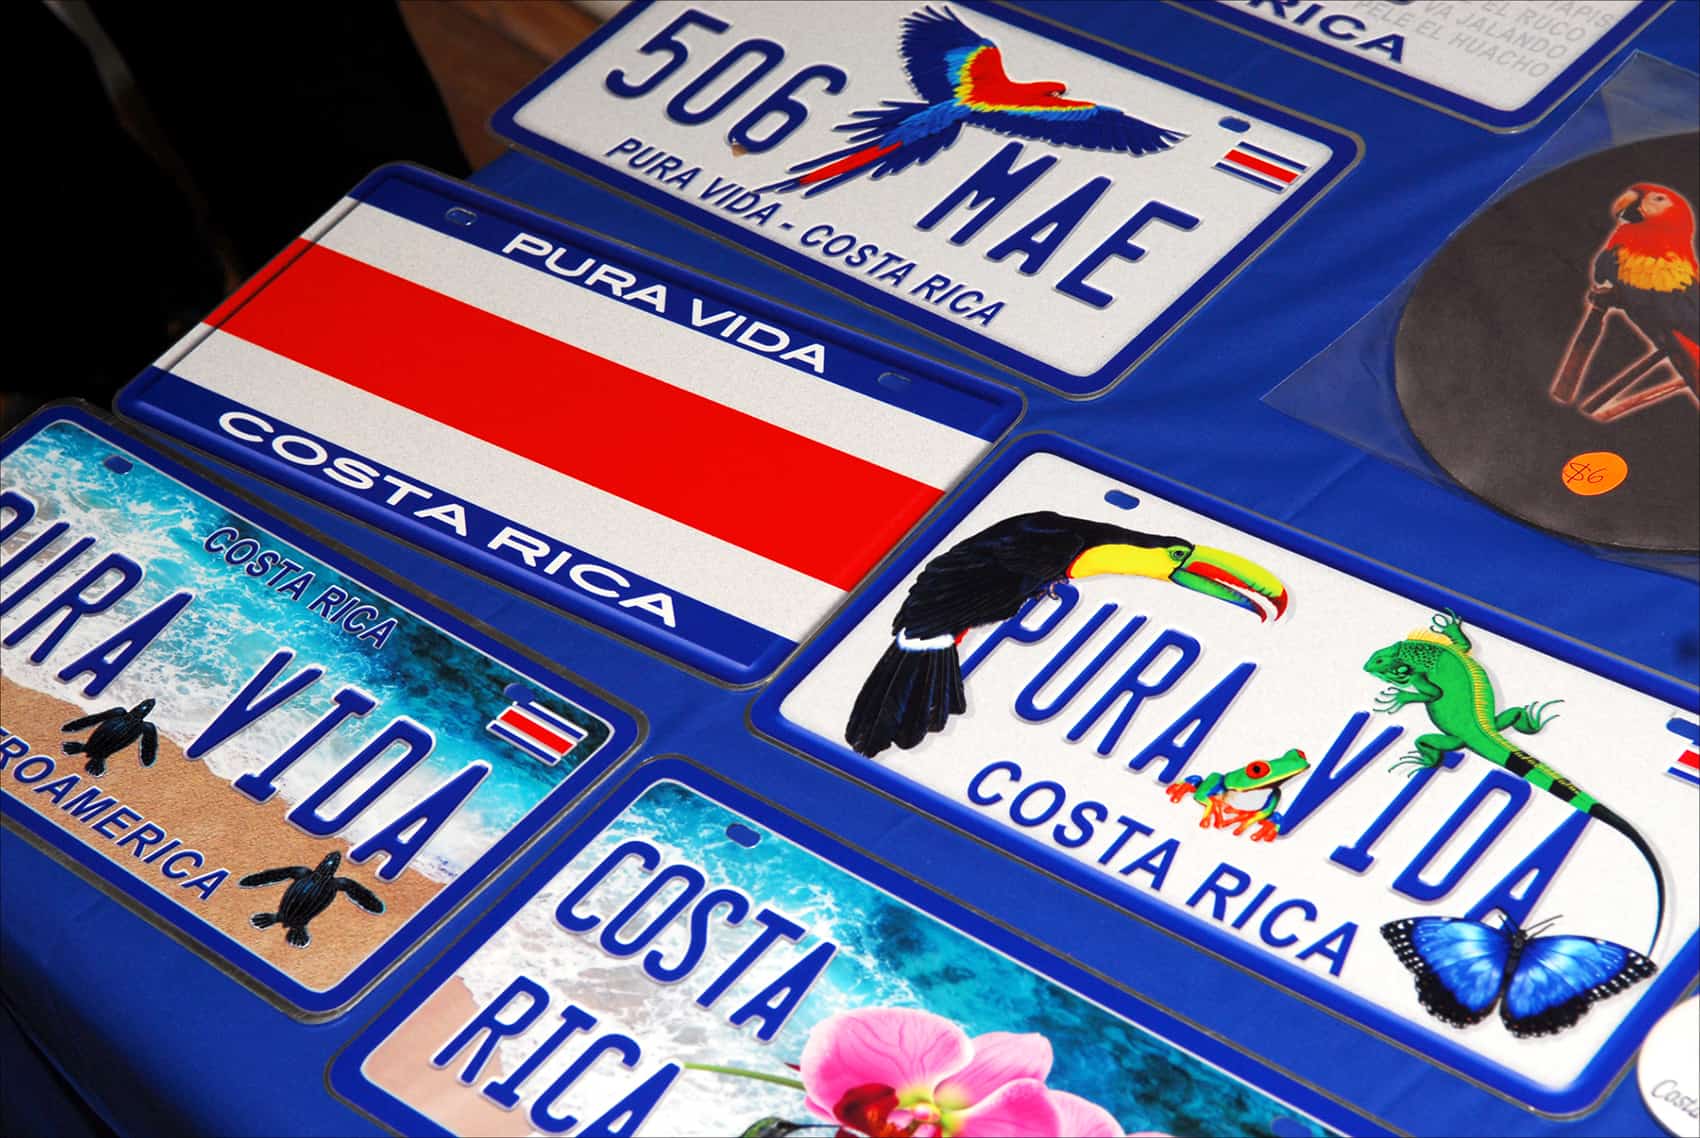 Souvenir license plates for sale.